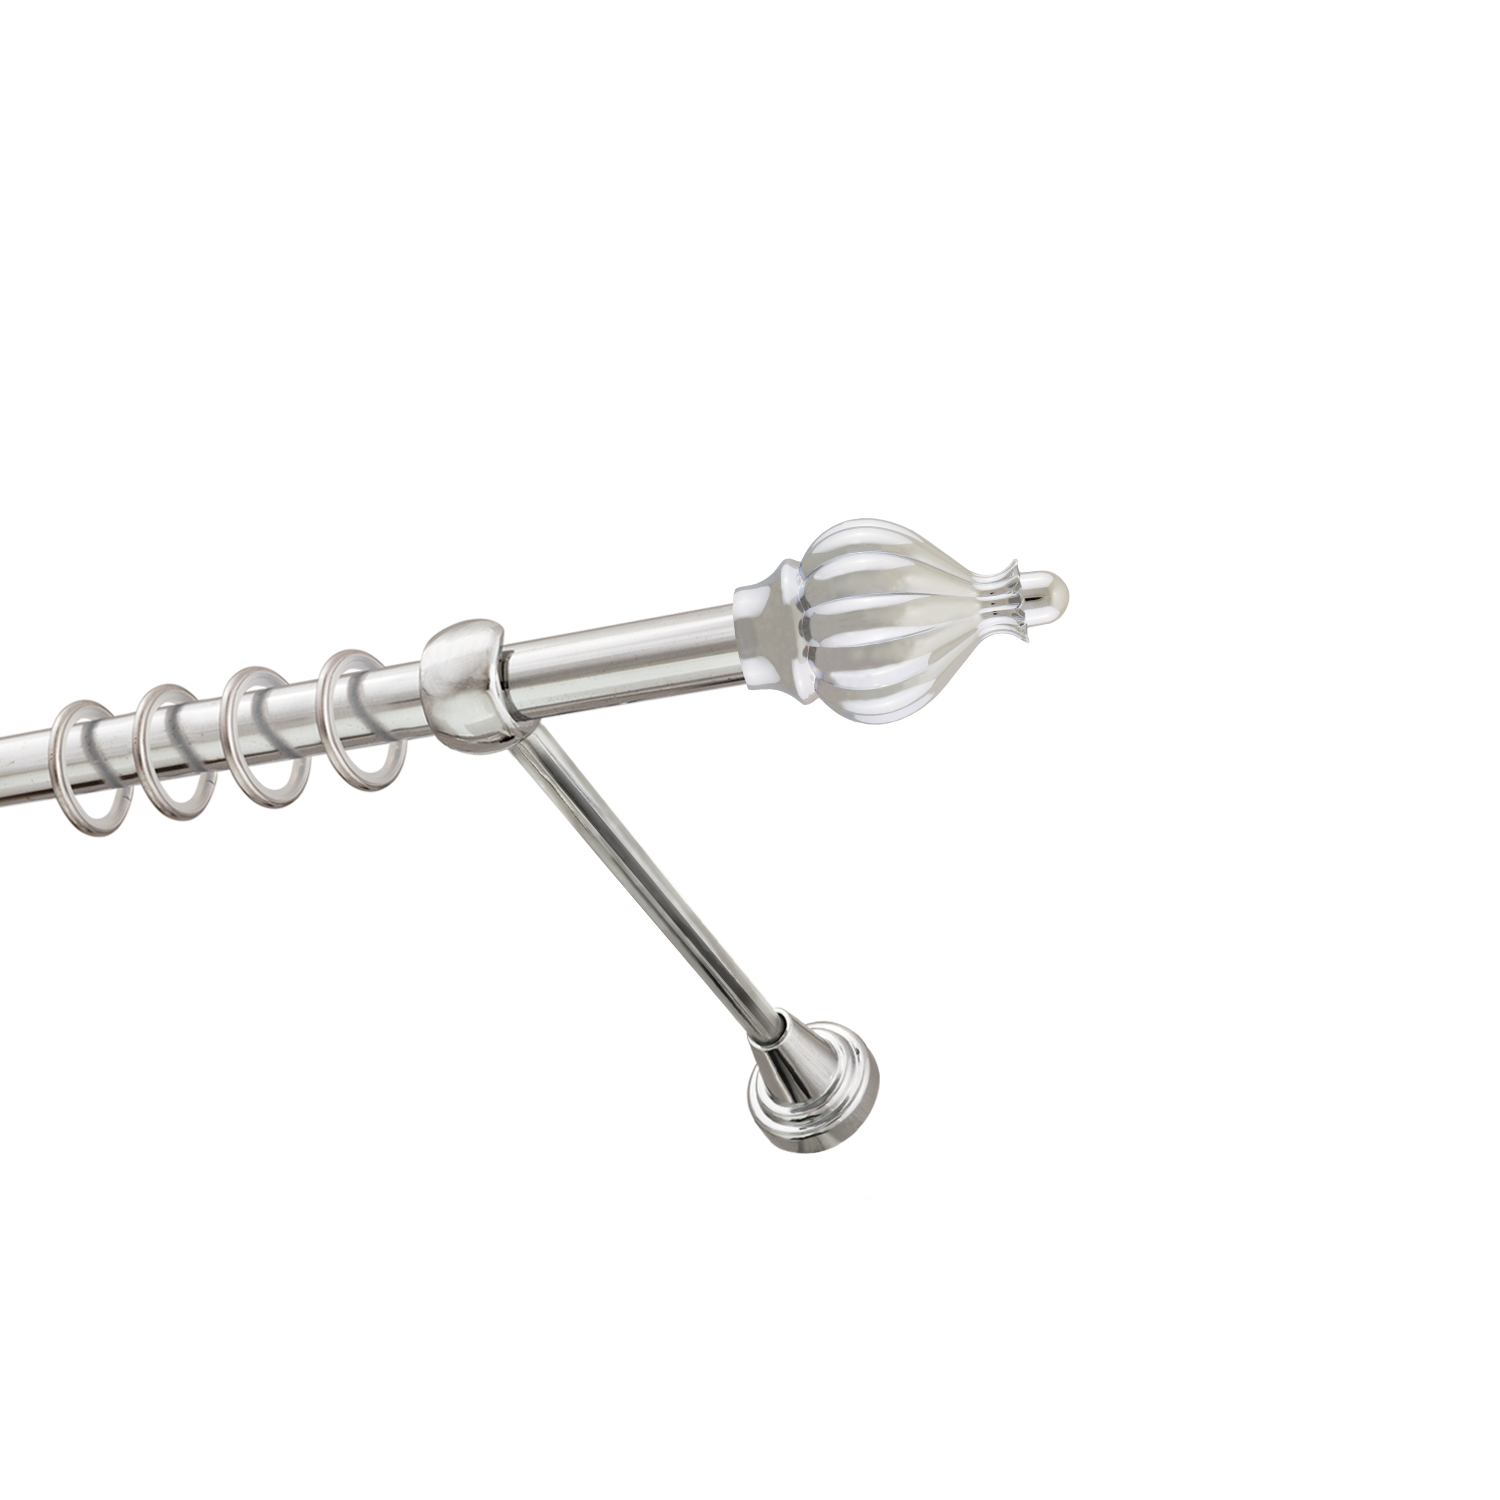 Металлический карниз для штор Афродита, однорядный 16 мм, серебро, гладкая штанга, длина 300 см - фото Wikidecor.ru